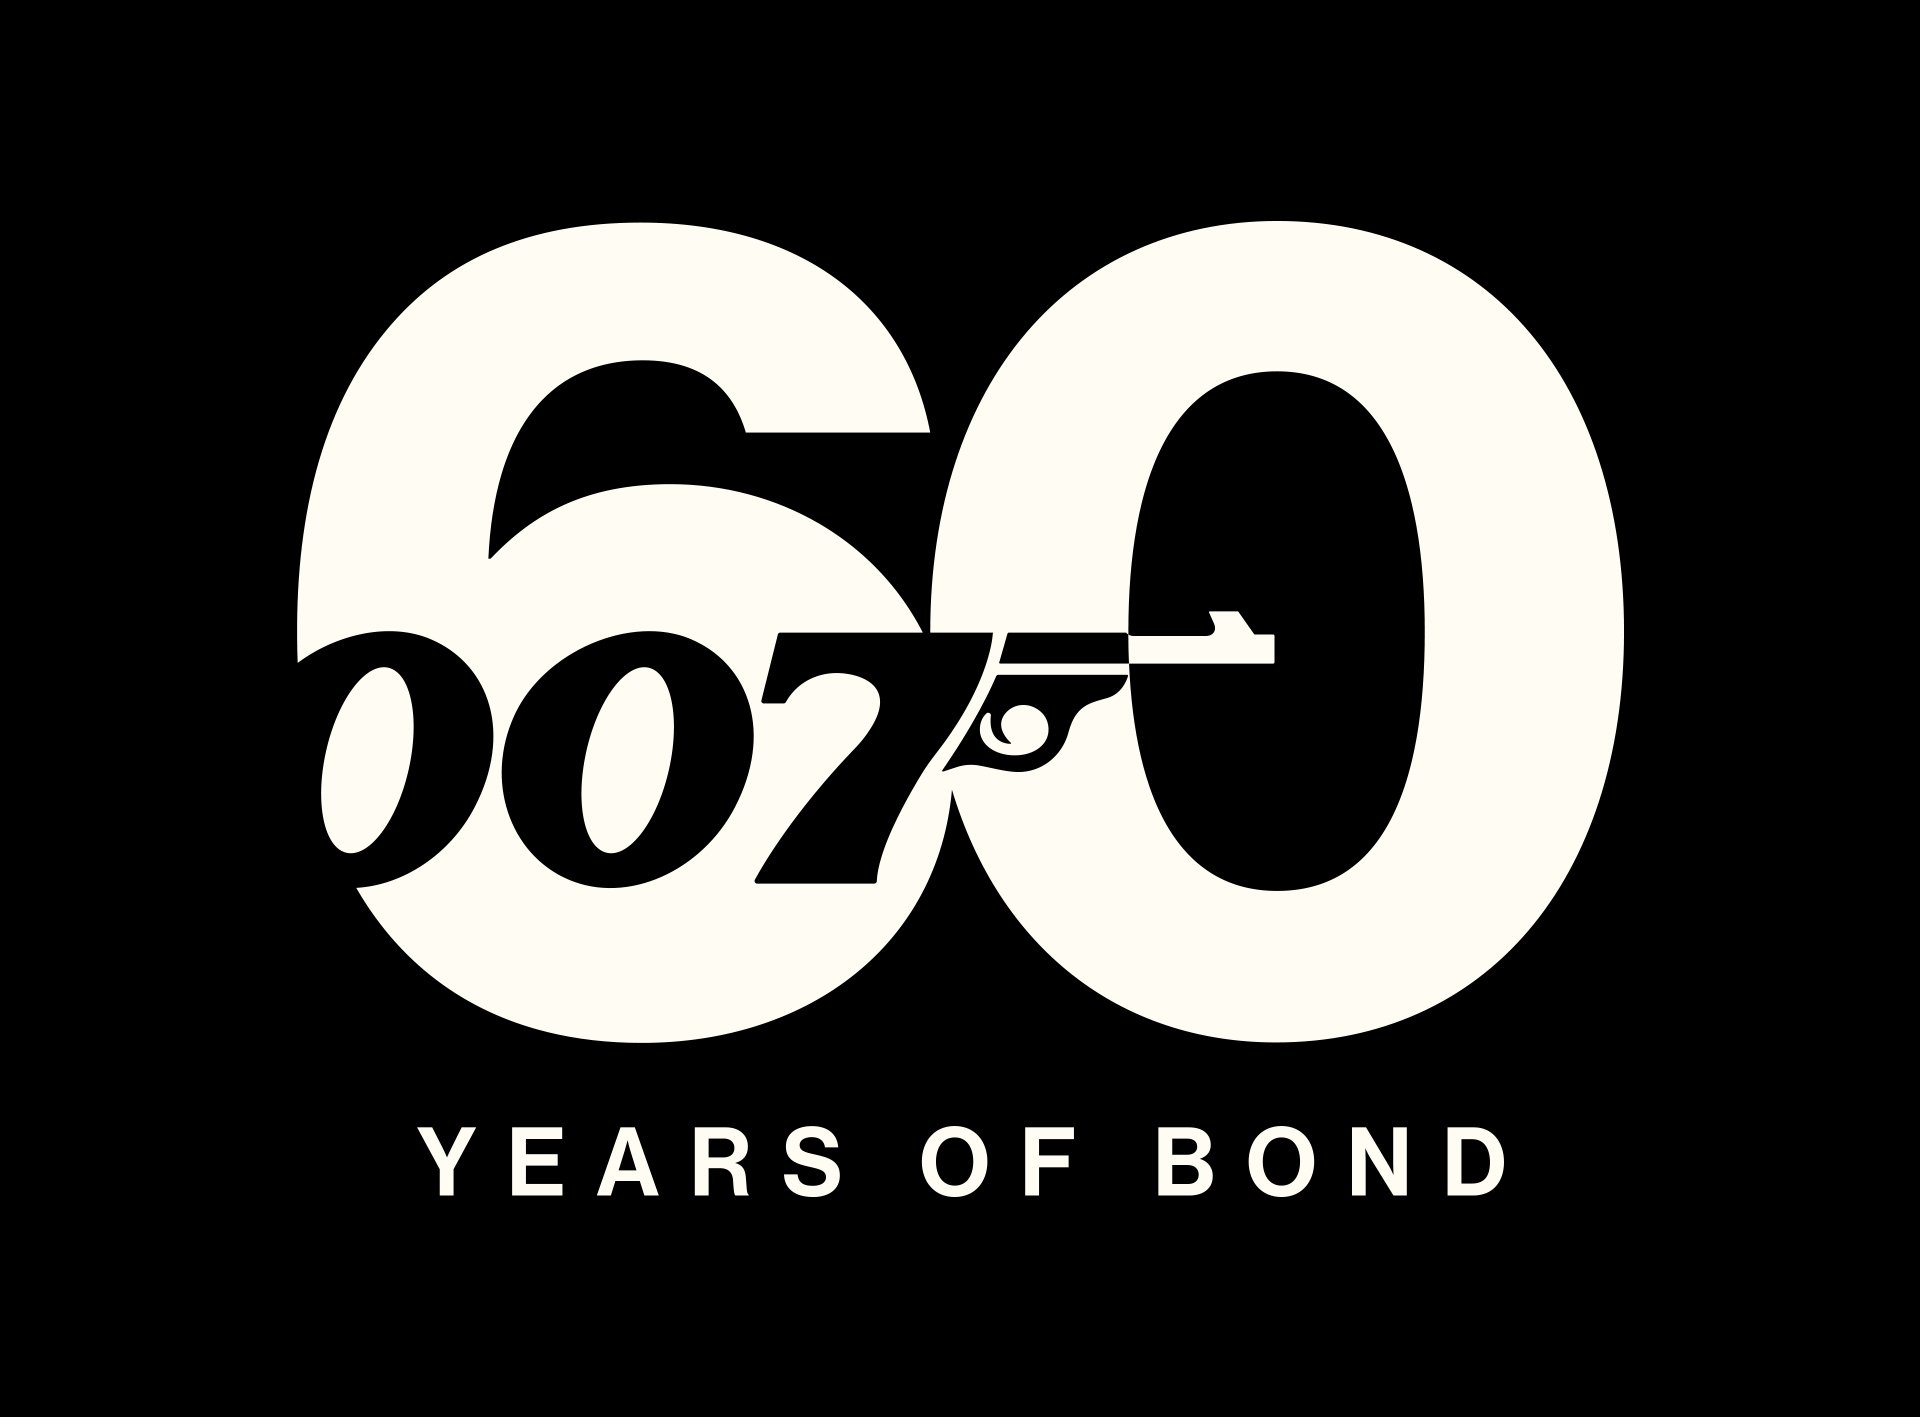 007 60 Years Of Bond